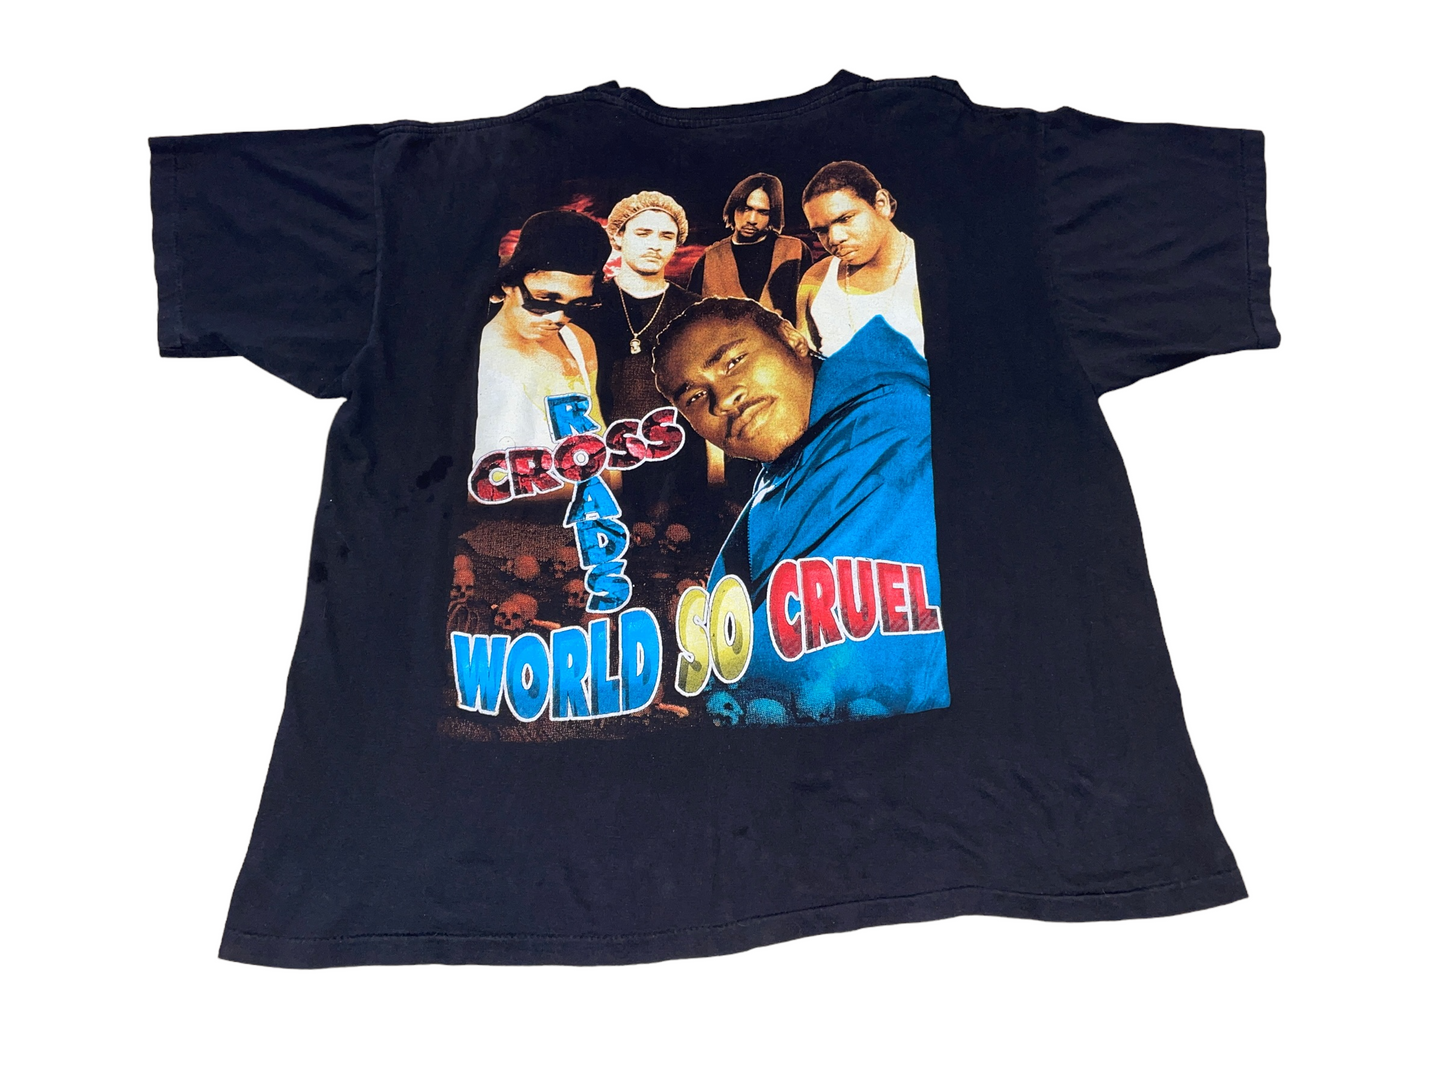 Vintage 90's Bone Thugs N Harmony T-Shirt